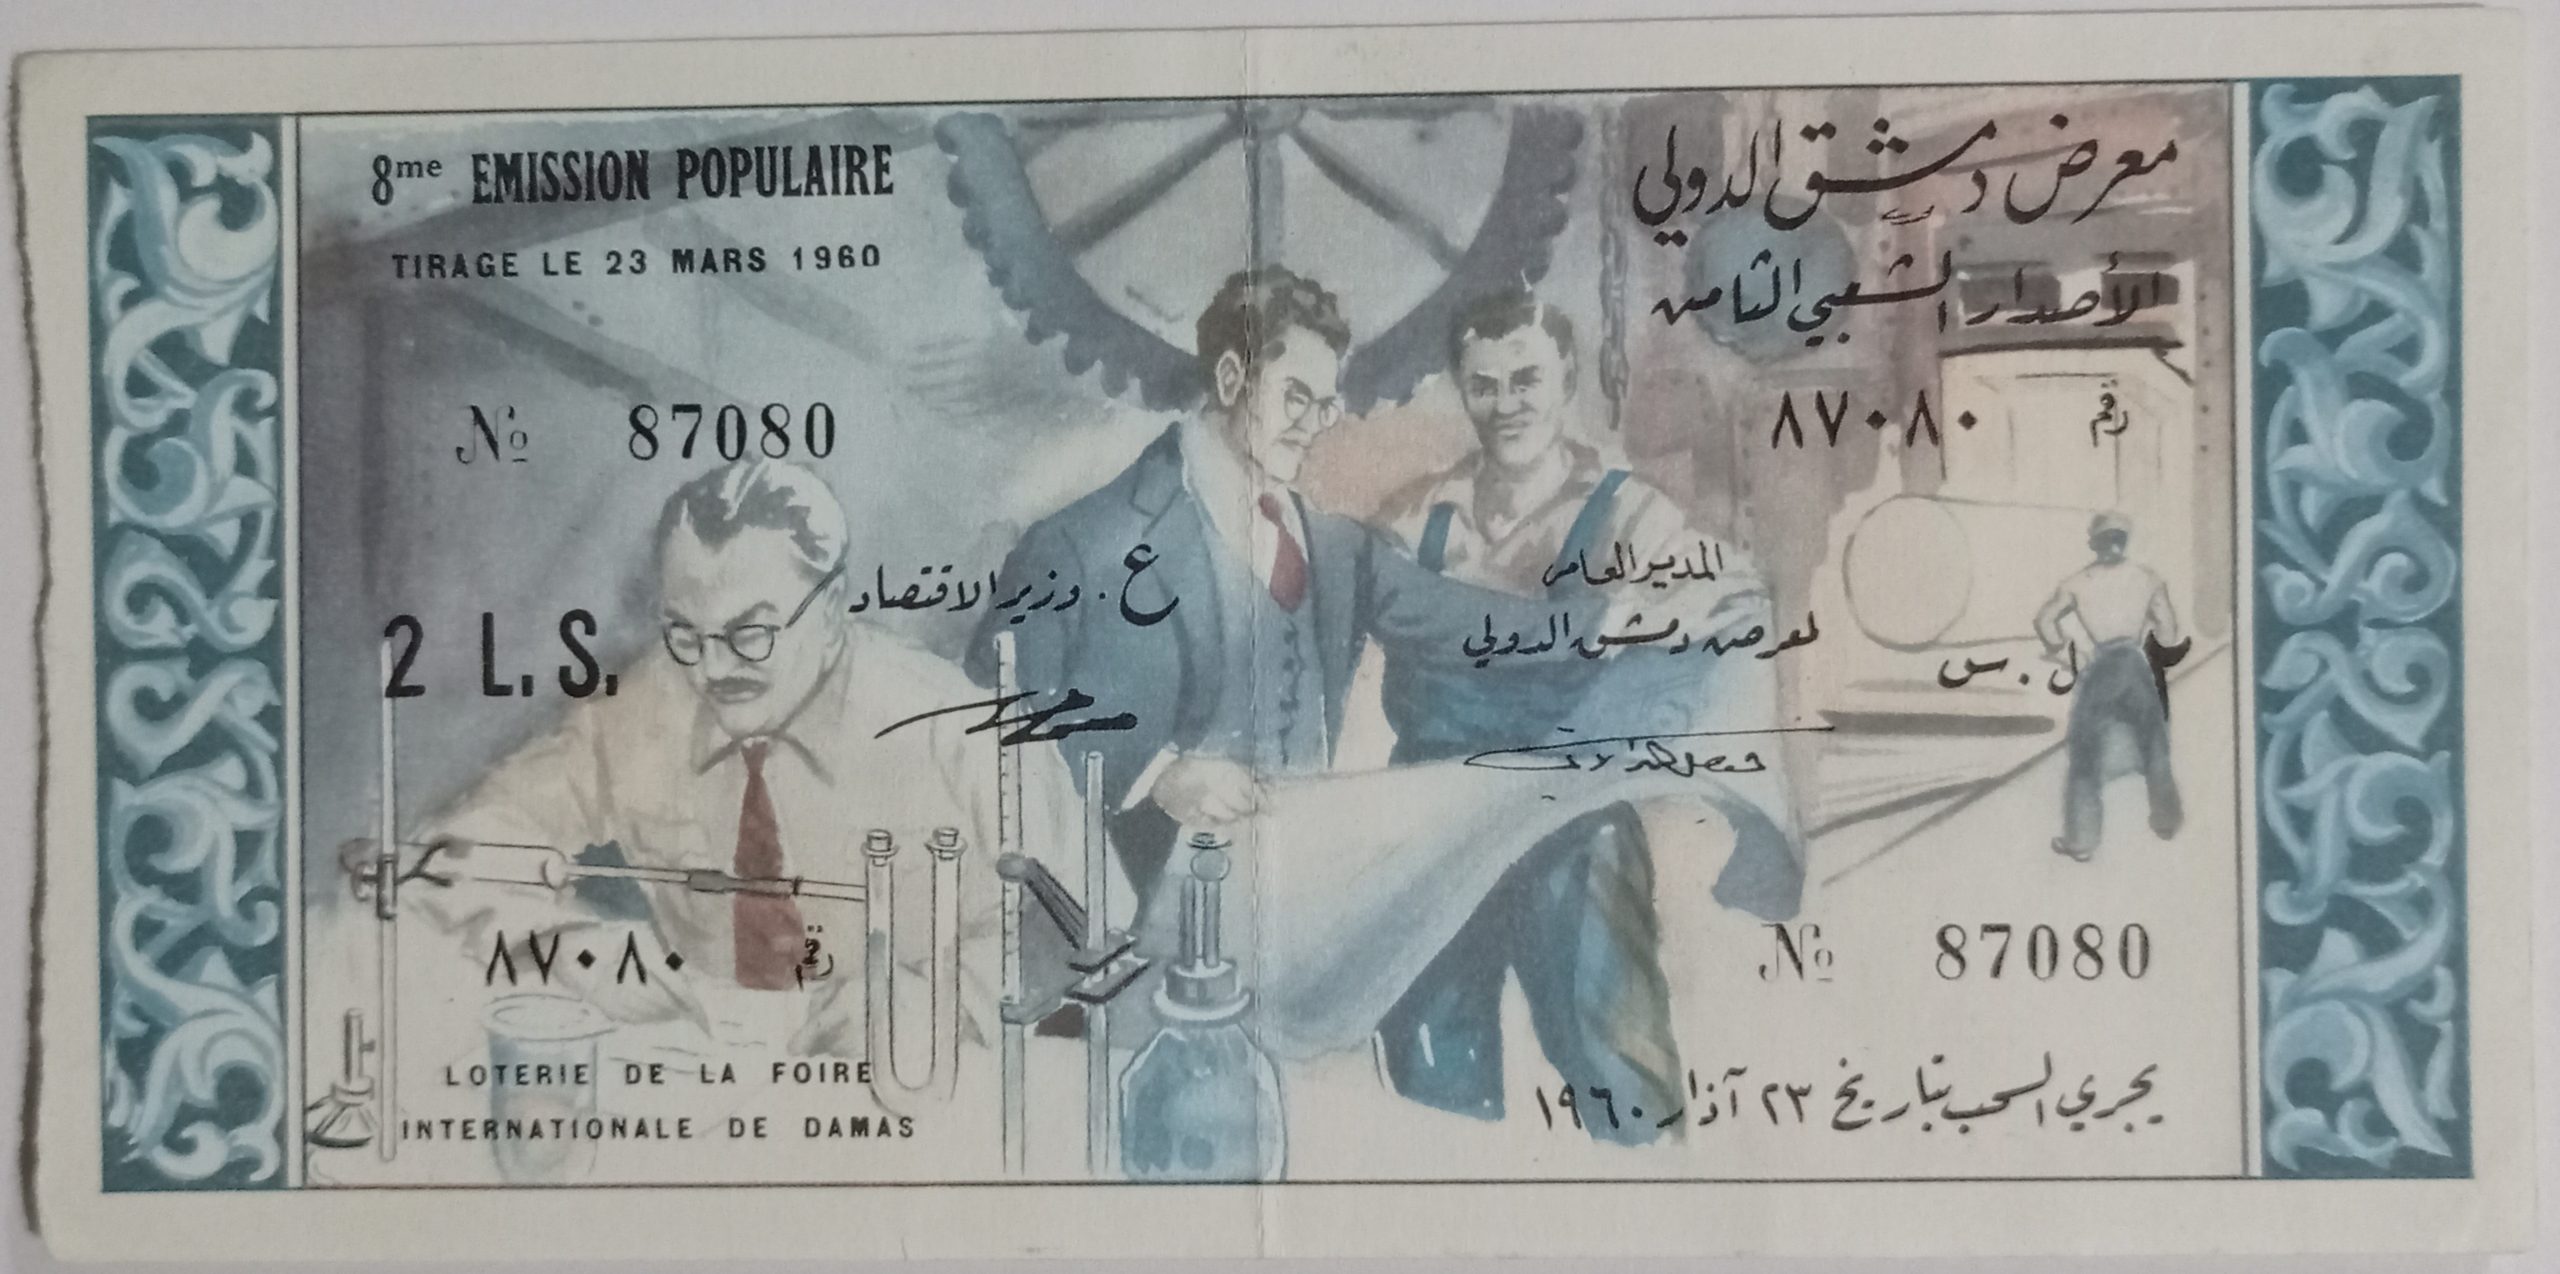 التاريخ السوري المعاصر - يانصيب معرض دمشق الدولي - الإصدار الشعبي الثامن عام 1960